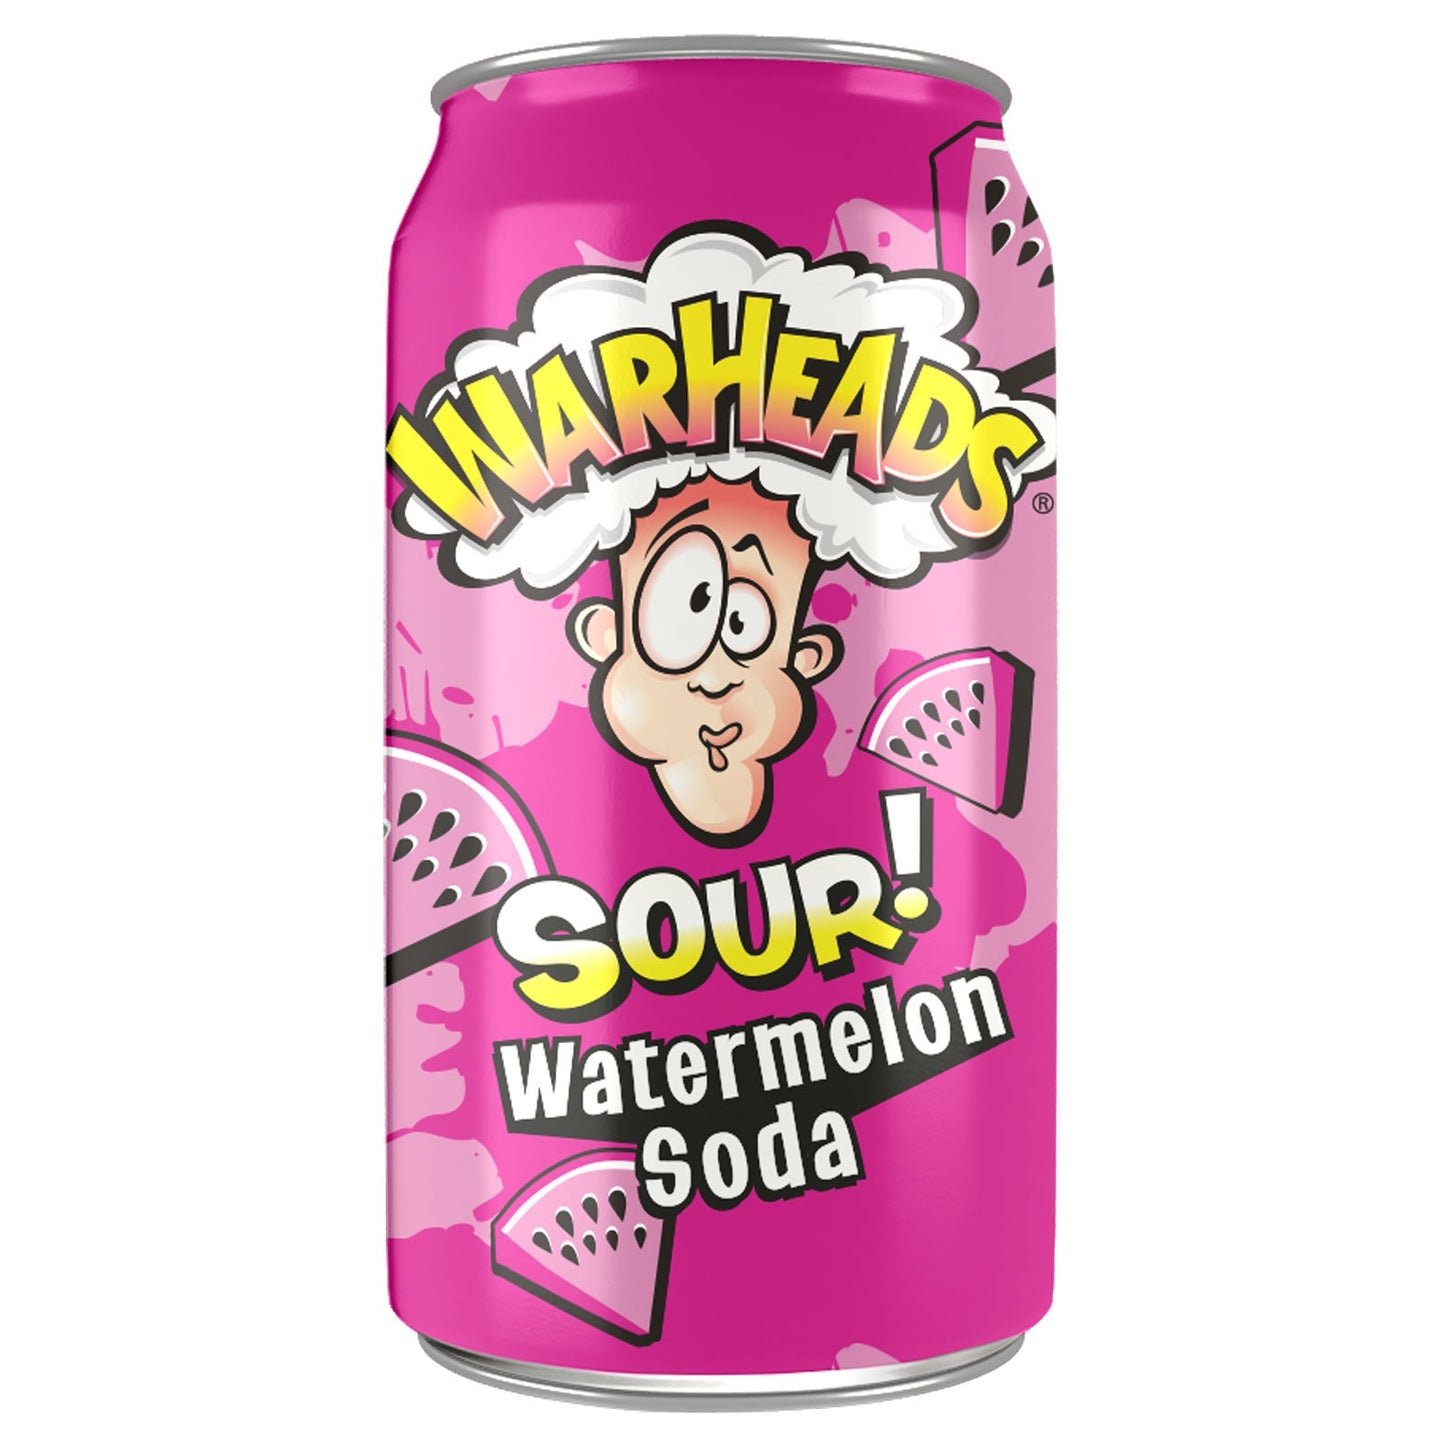 War Heads Sour Watermelon Soda